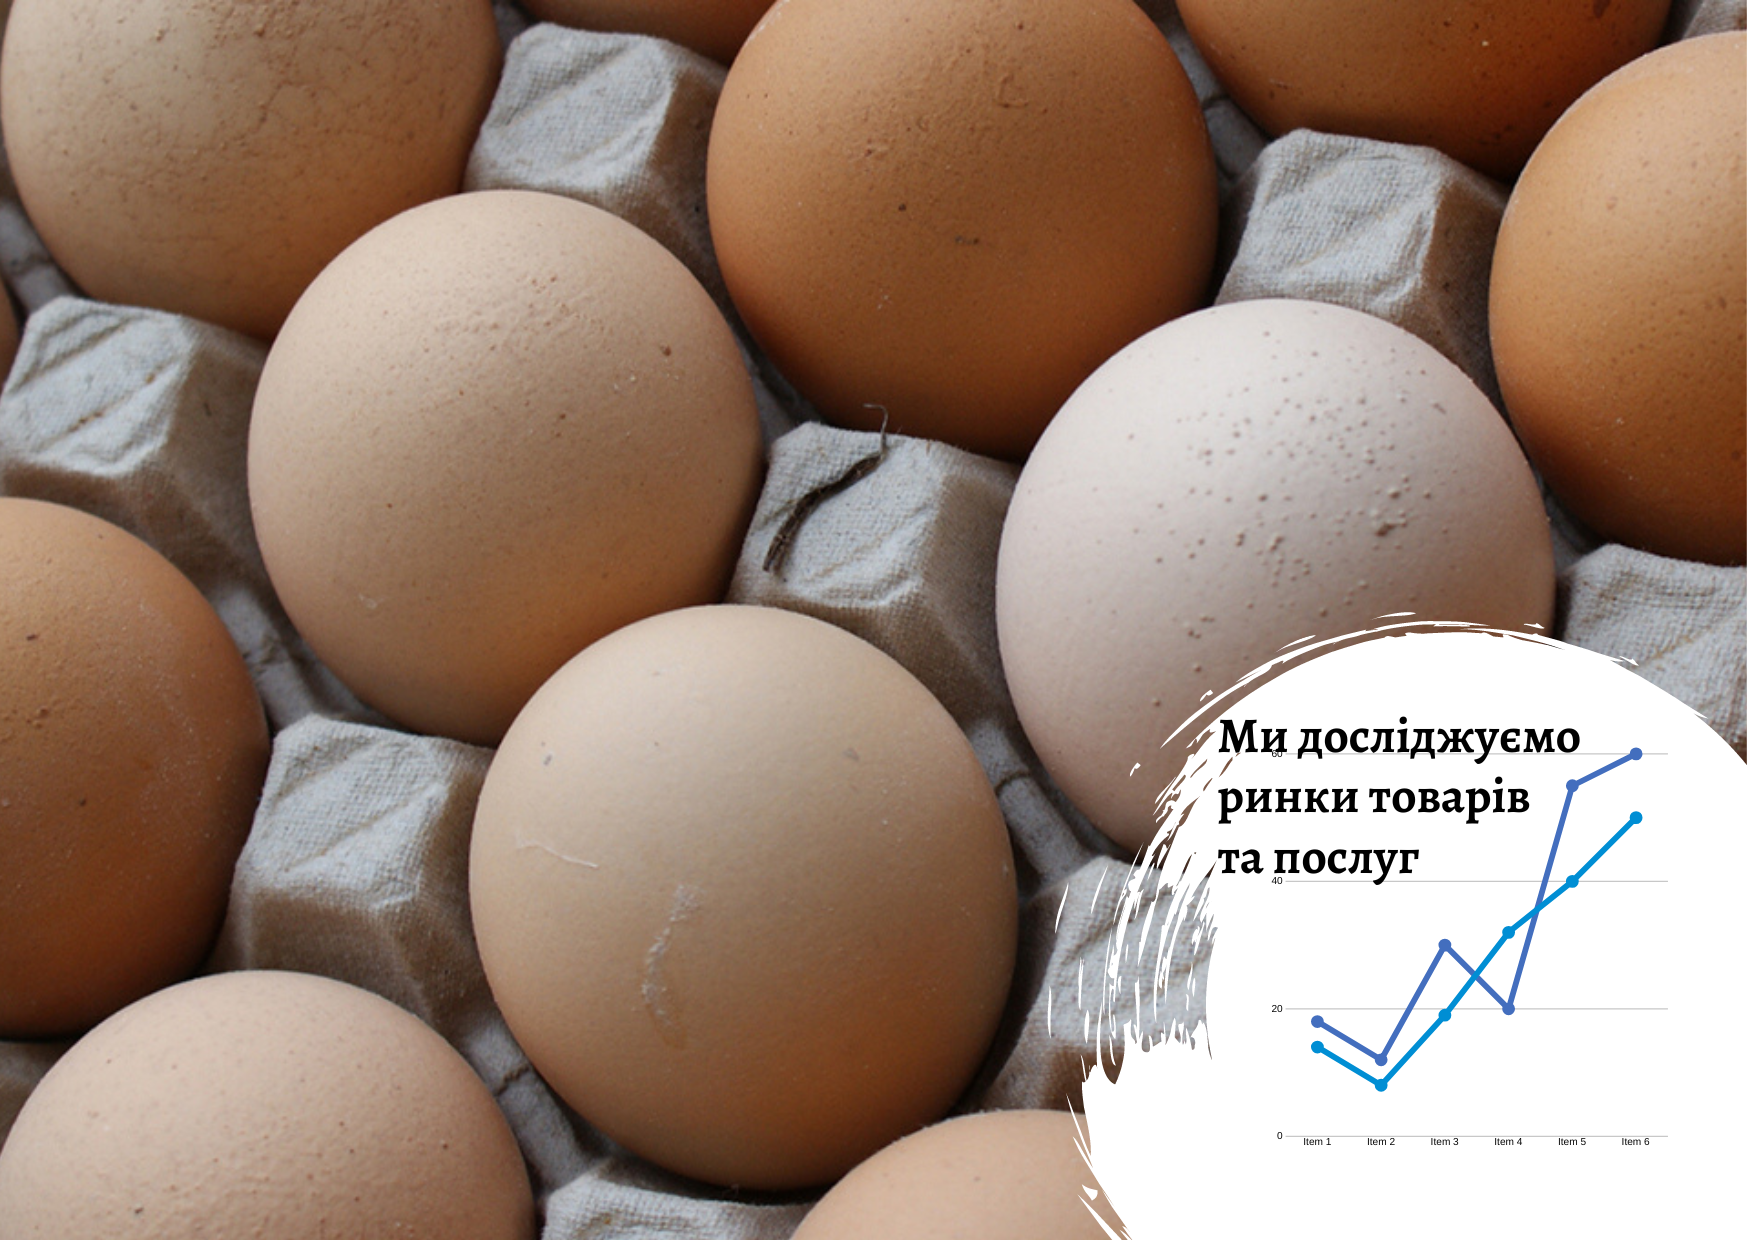 Рынок яиц свободного выгула в Украине: тренды